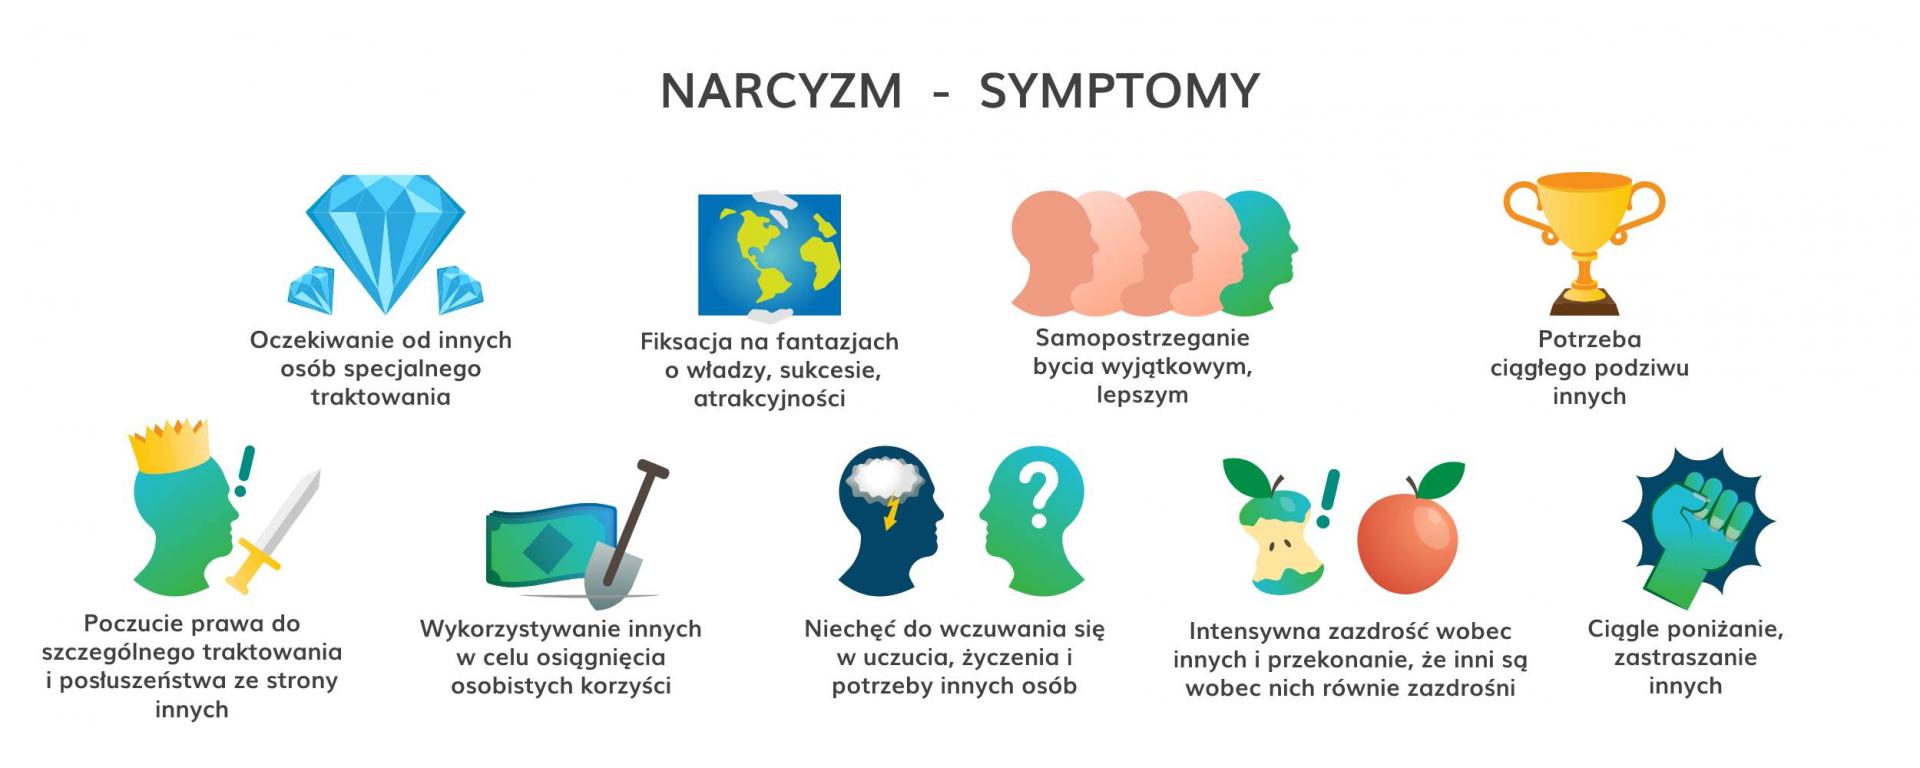 narcyzm_symptomy.jpg